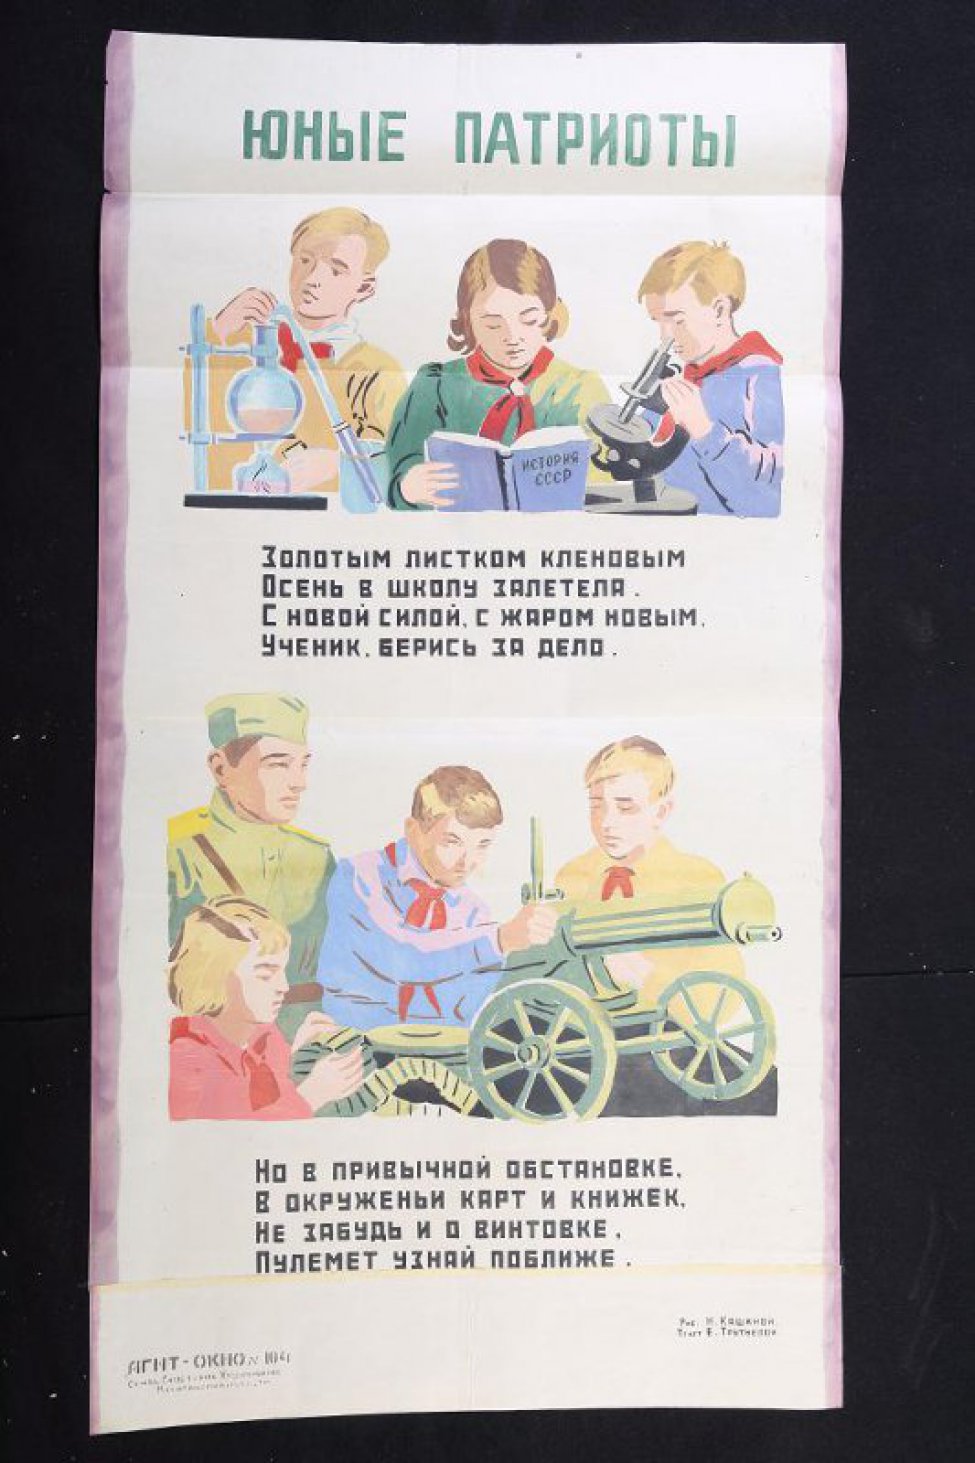 Помещено 2 рисунка: 1). трое пионеров, два мальчика и девочка за книгой и микроскопами; 2). пионеры изучают пулемет, с ними военный".